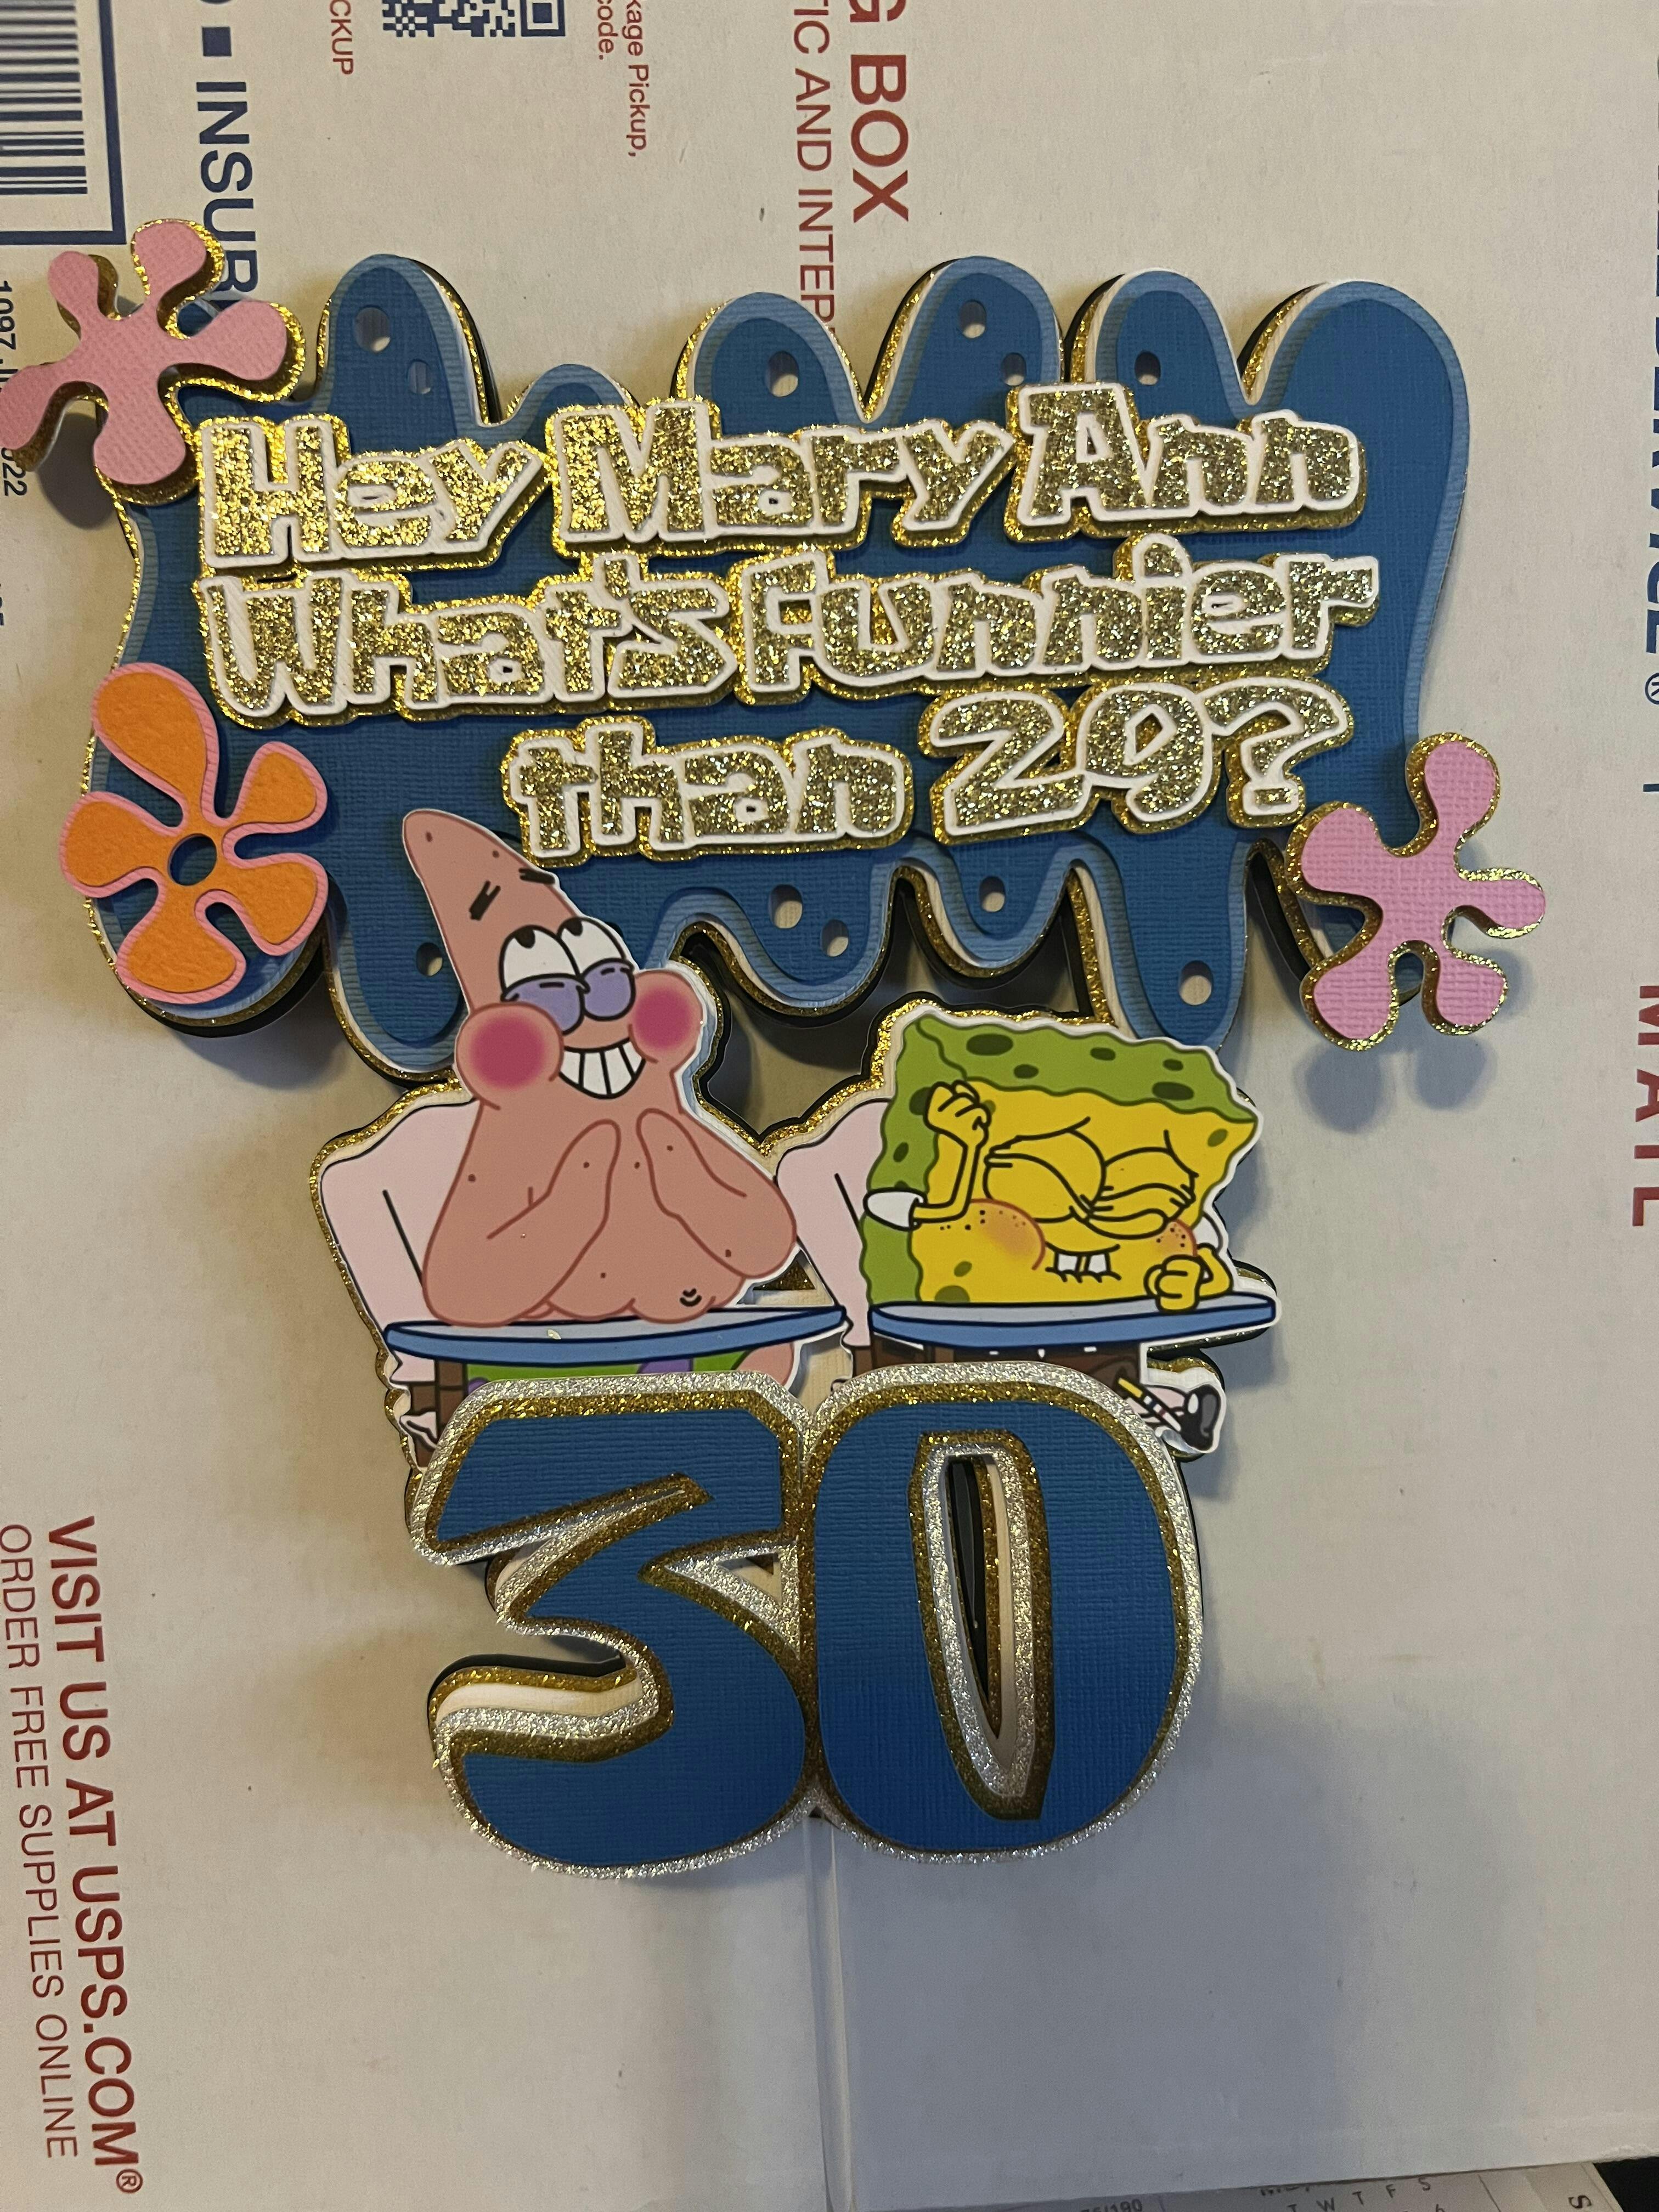 Spongebob Cake 2 Meme Generator - Imgflip